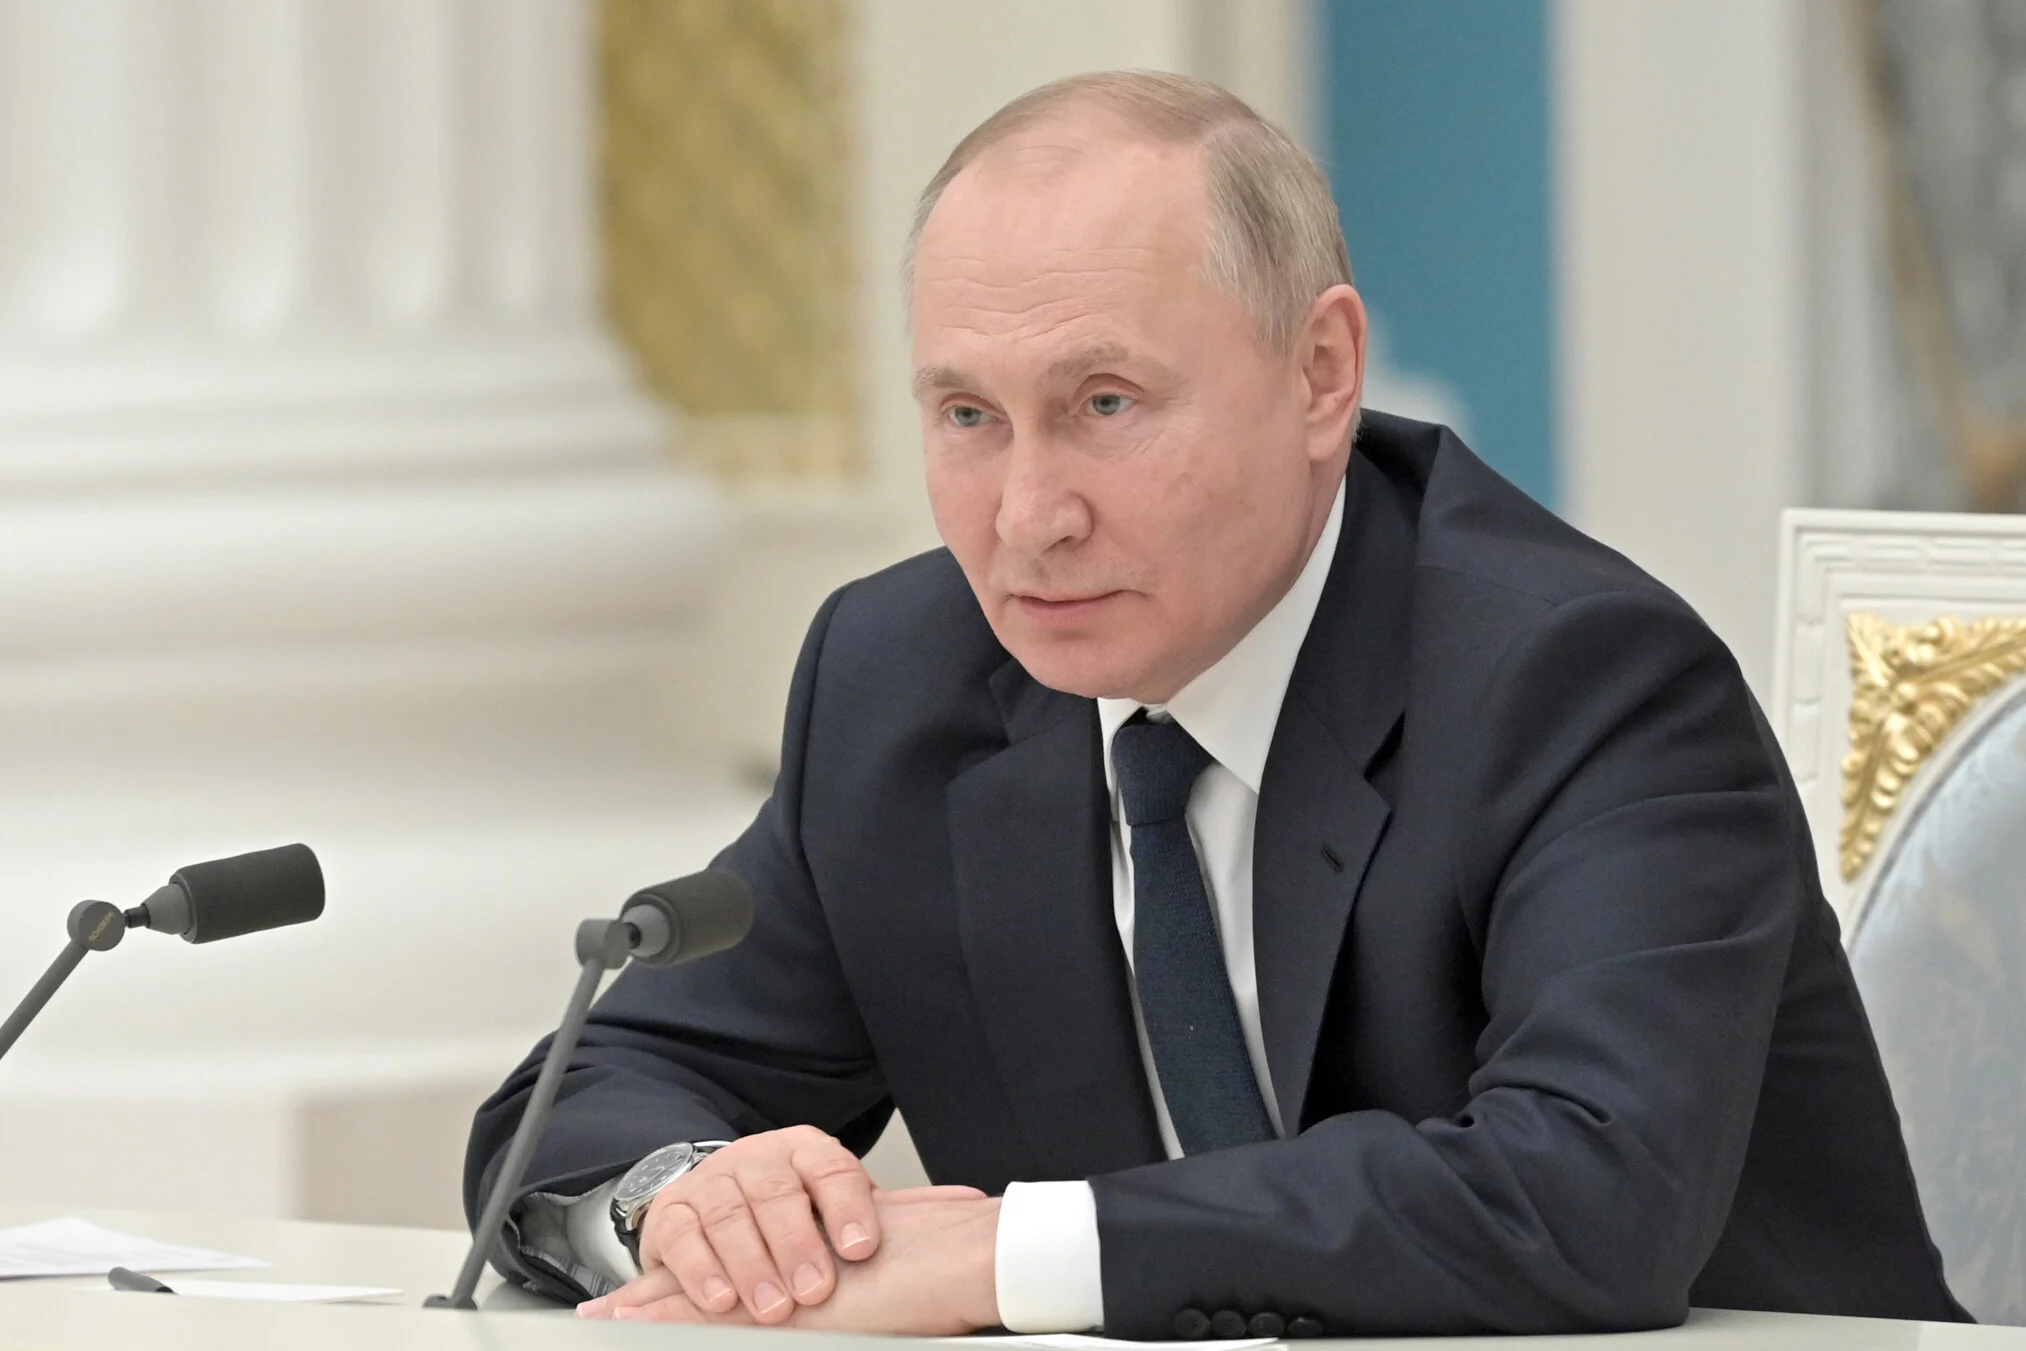 Ο Β.Πούτιν υπέγραψε διάταγμα οικονομικών παροχών σε Ουκρανούς που εγκαταστάθηκαν στη Ρωσία